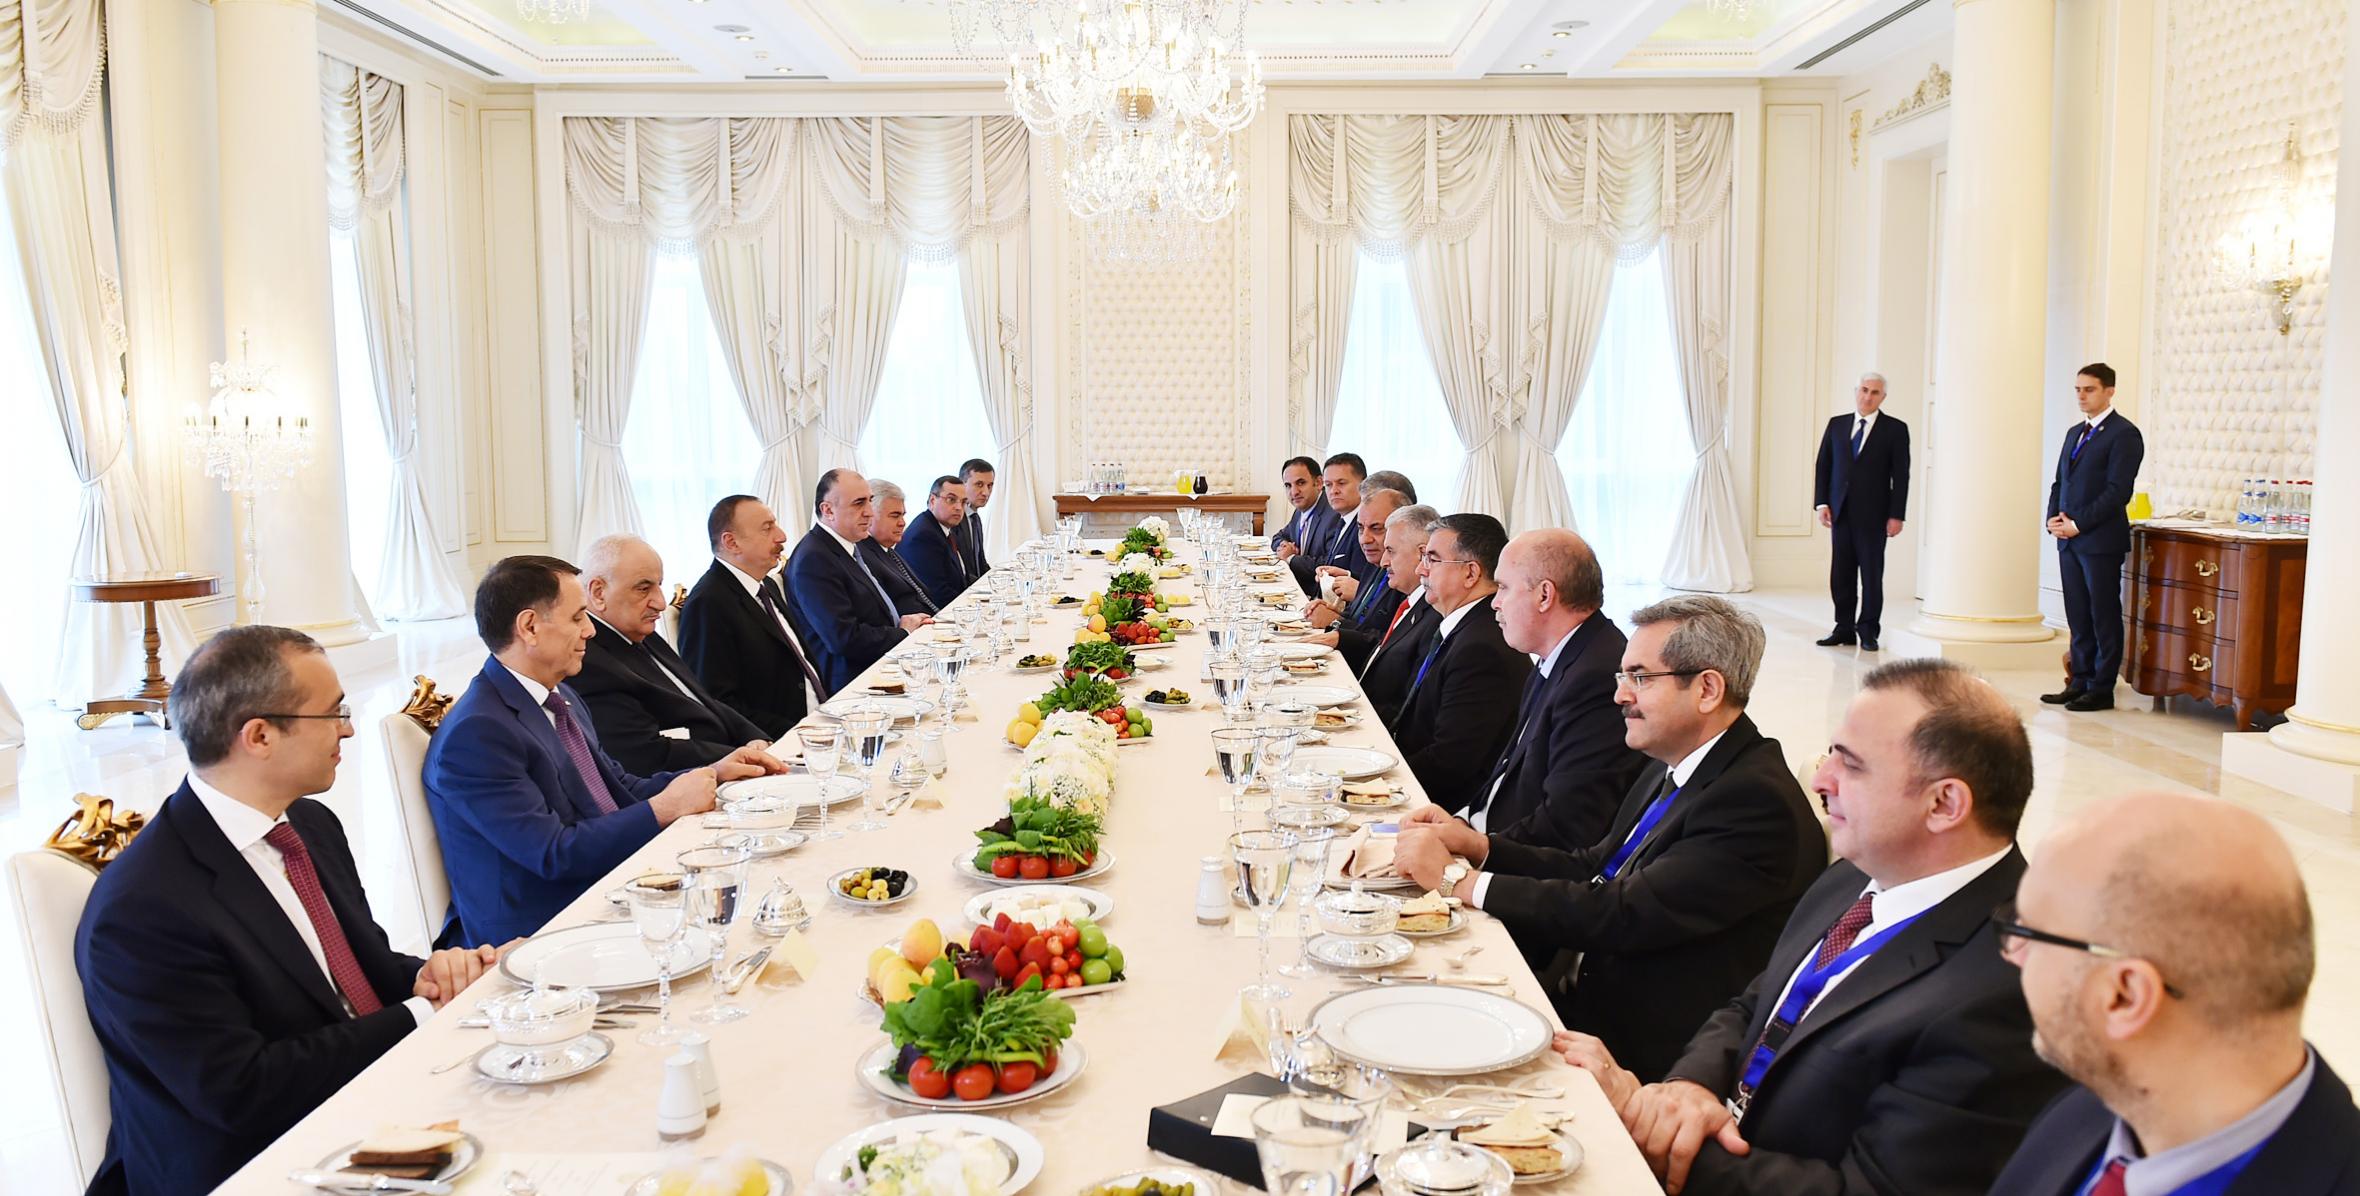 От имени Ильхама Алиева был устроен прием в честь находящегося с официальным визитом в нашей стране премьер-министра Турецкой Республики Бинали Йылдырыма